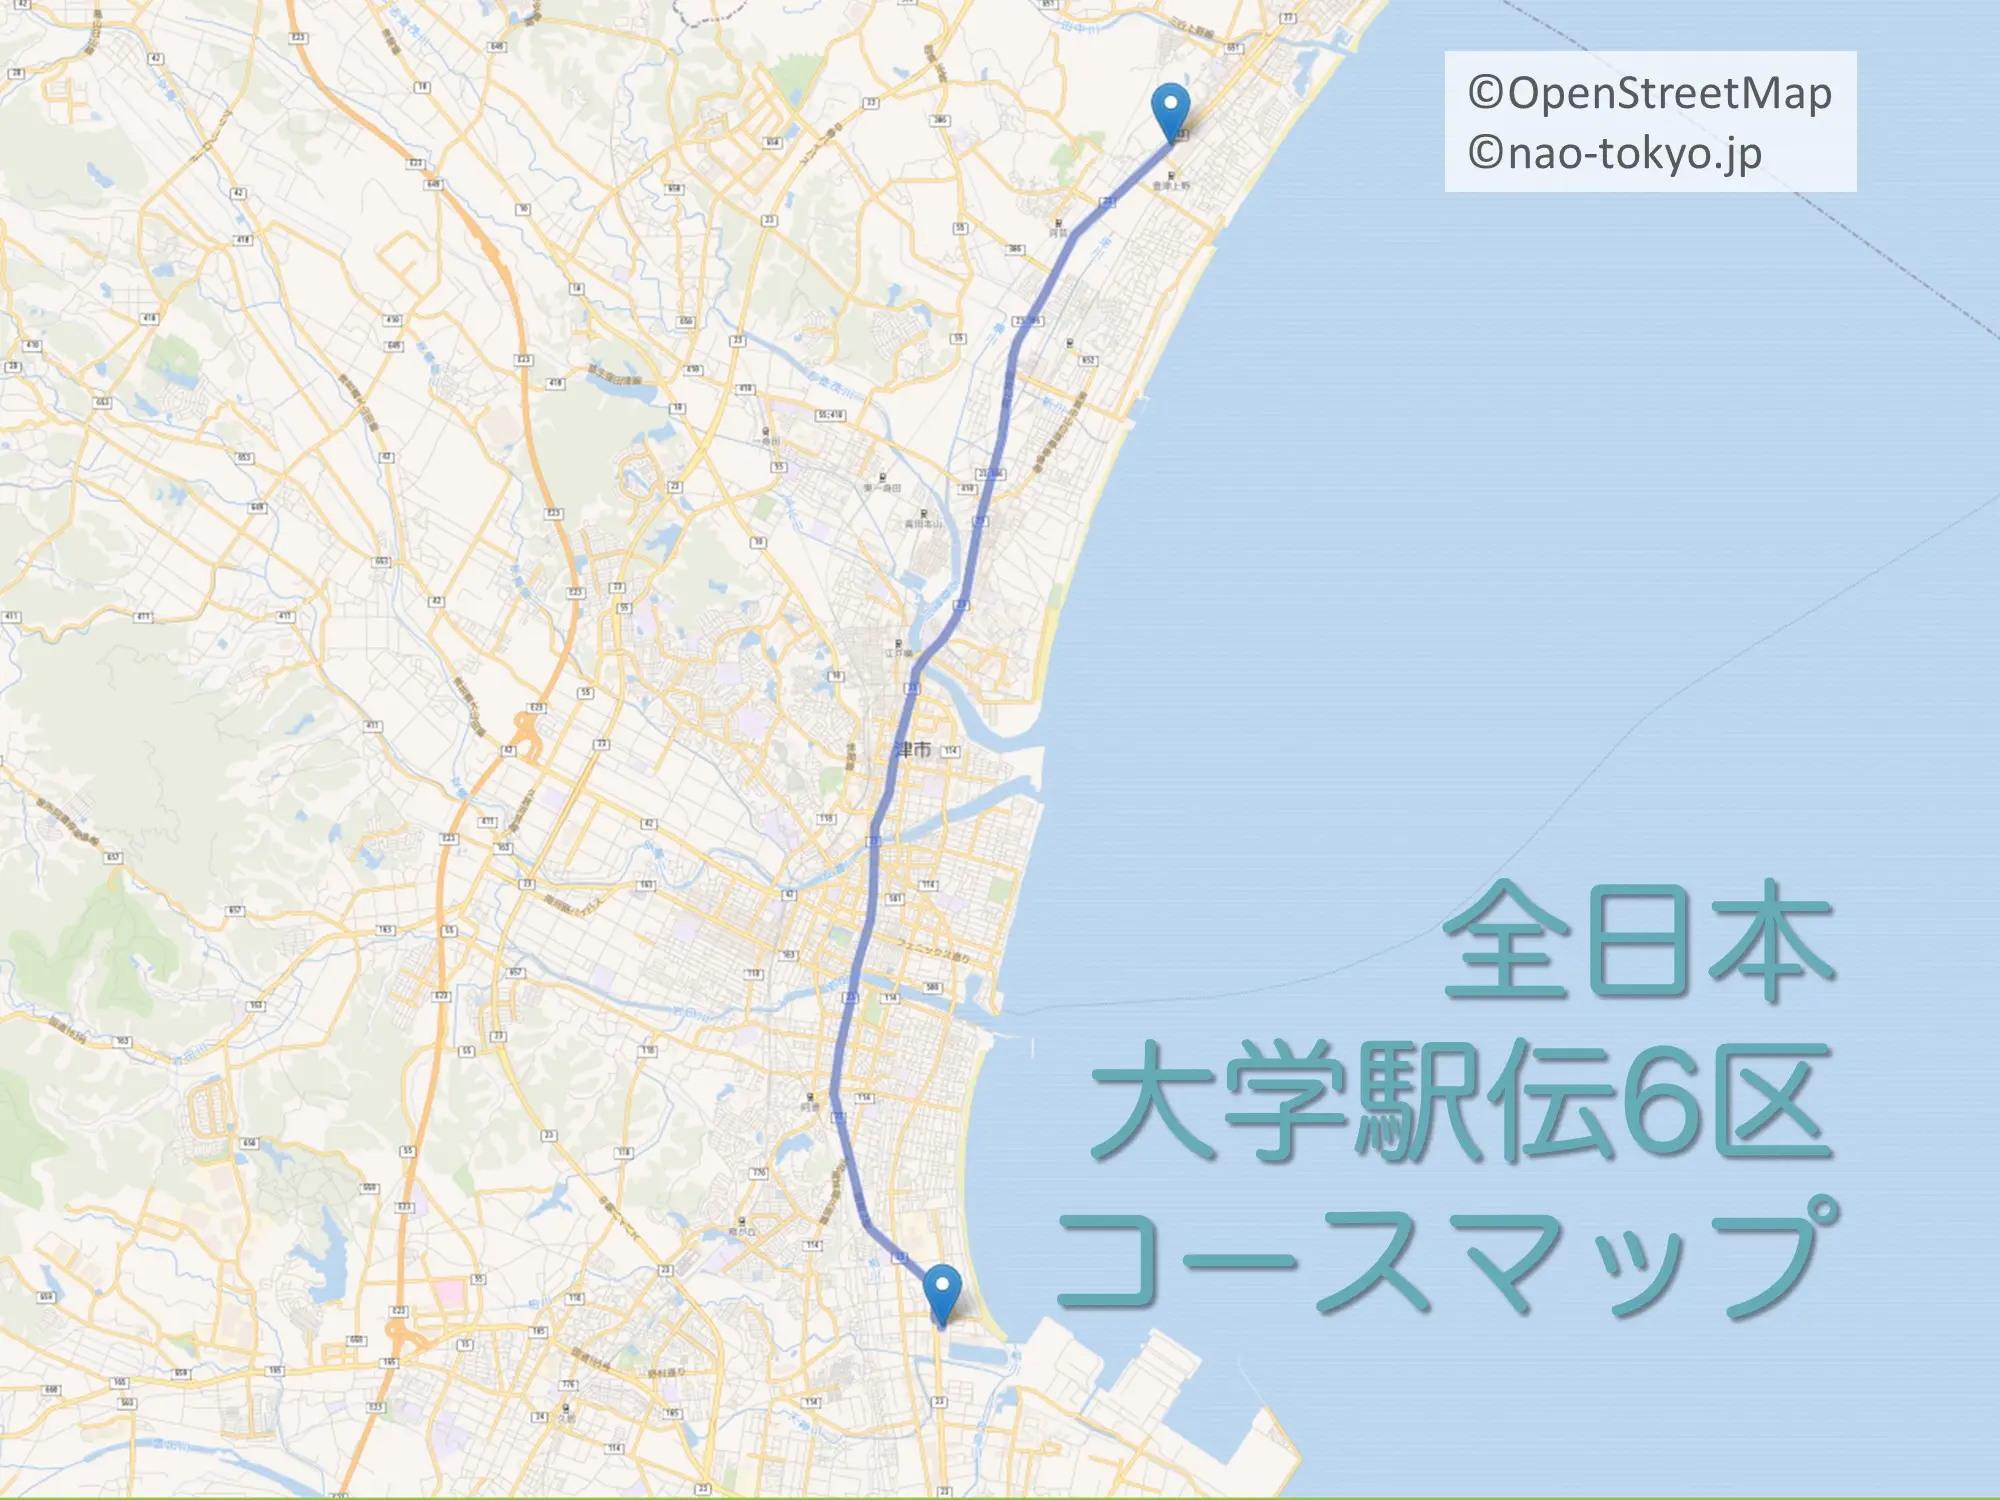 全日本大学駅伝6区のコースをマップで紹介